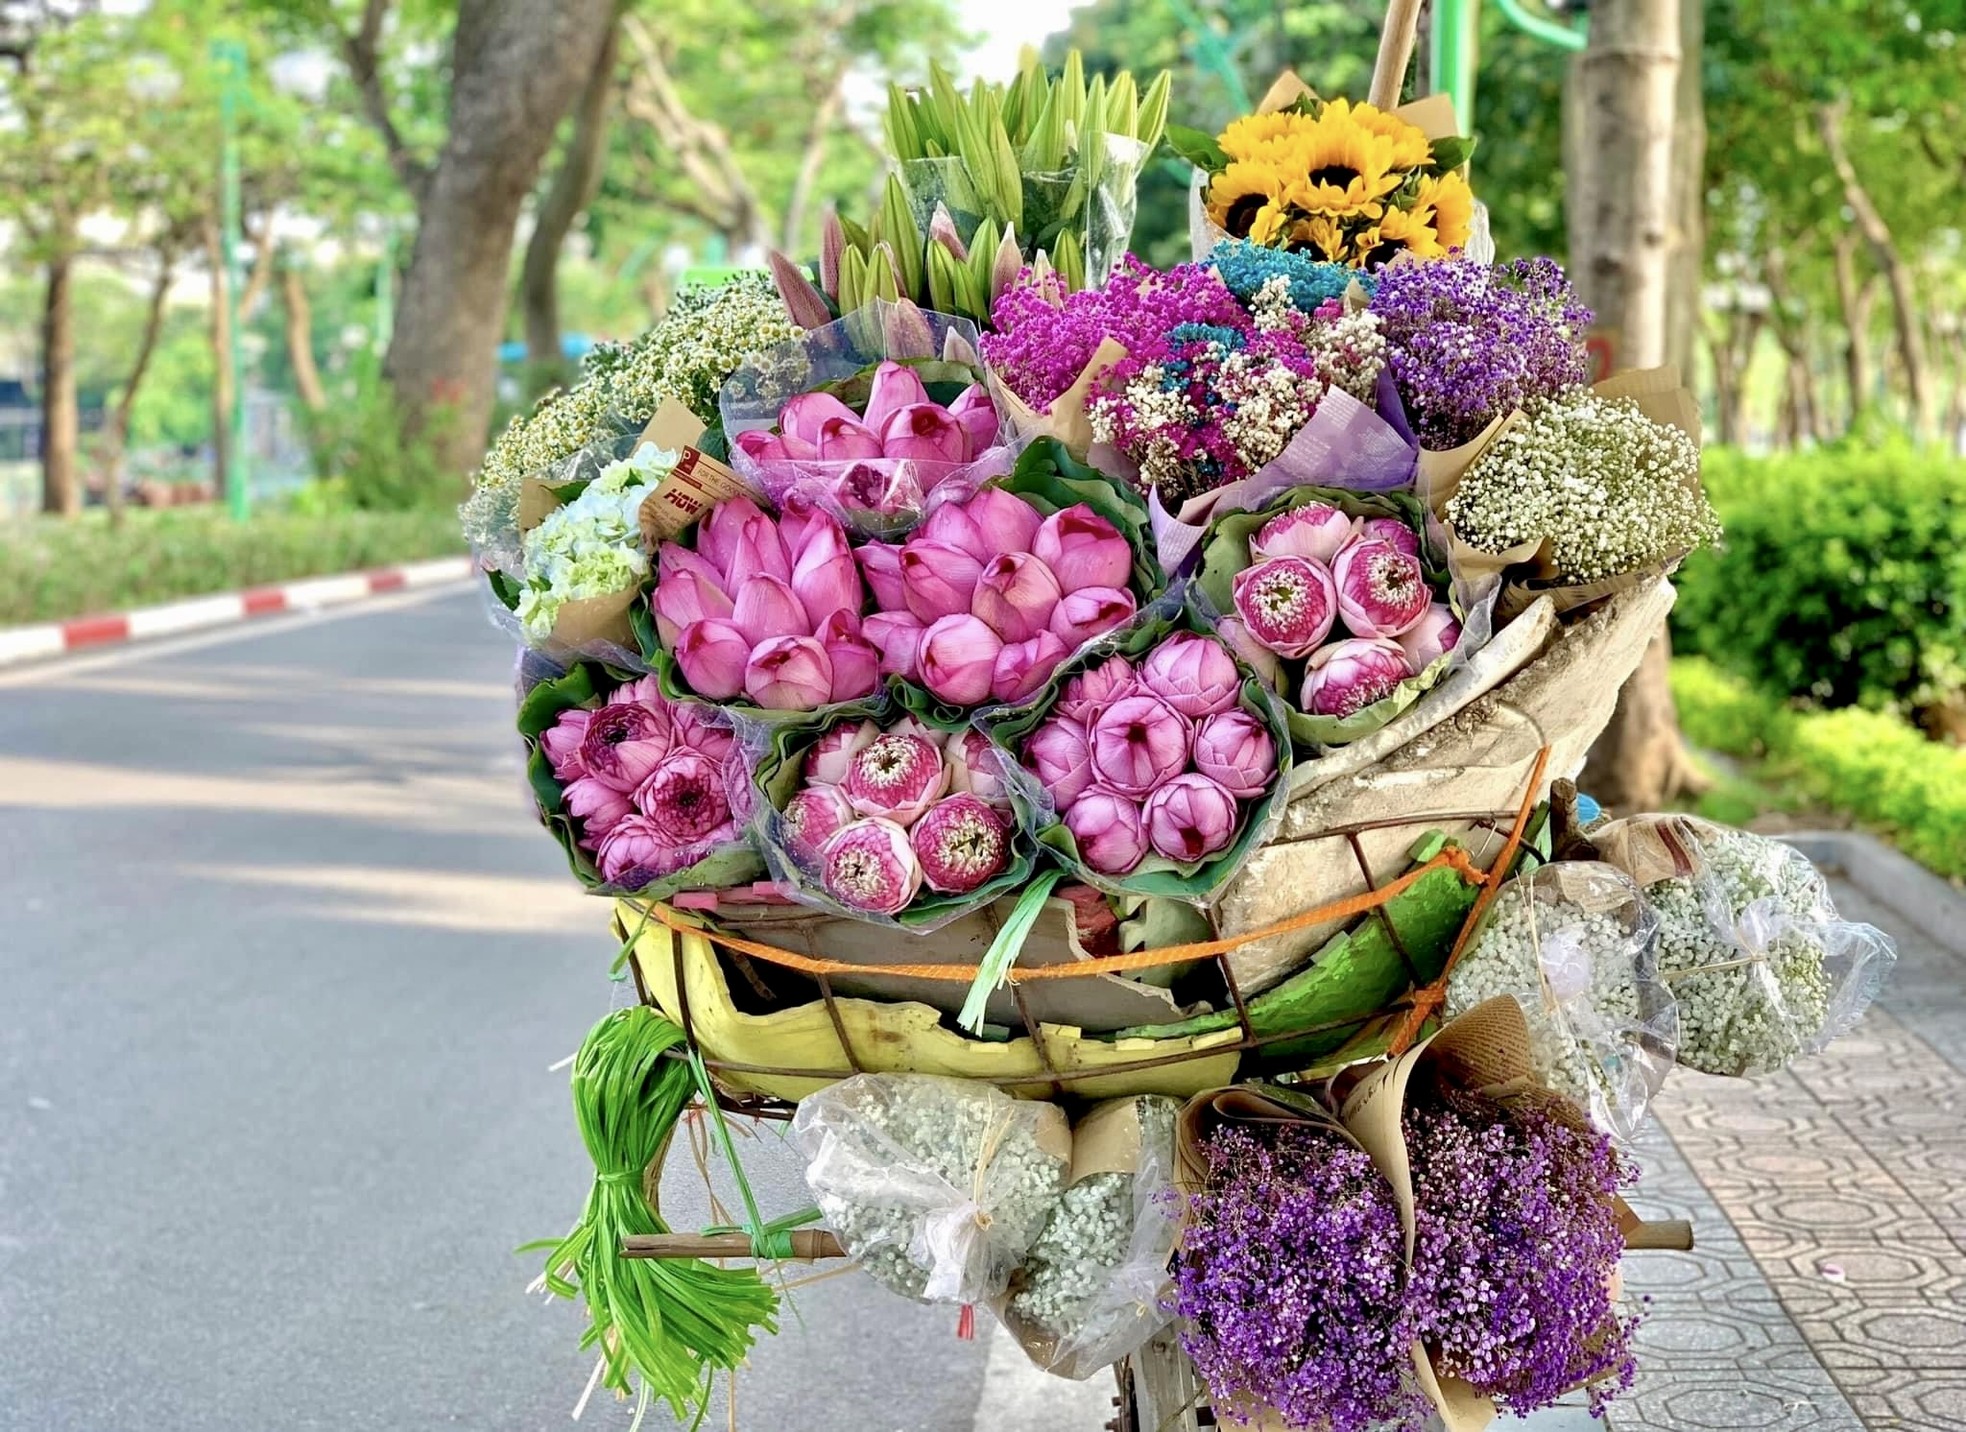 Xe hàng hoa đẹp ngỡ ngàng giữa phố phường Hà Nội - Ảnh 2.